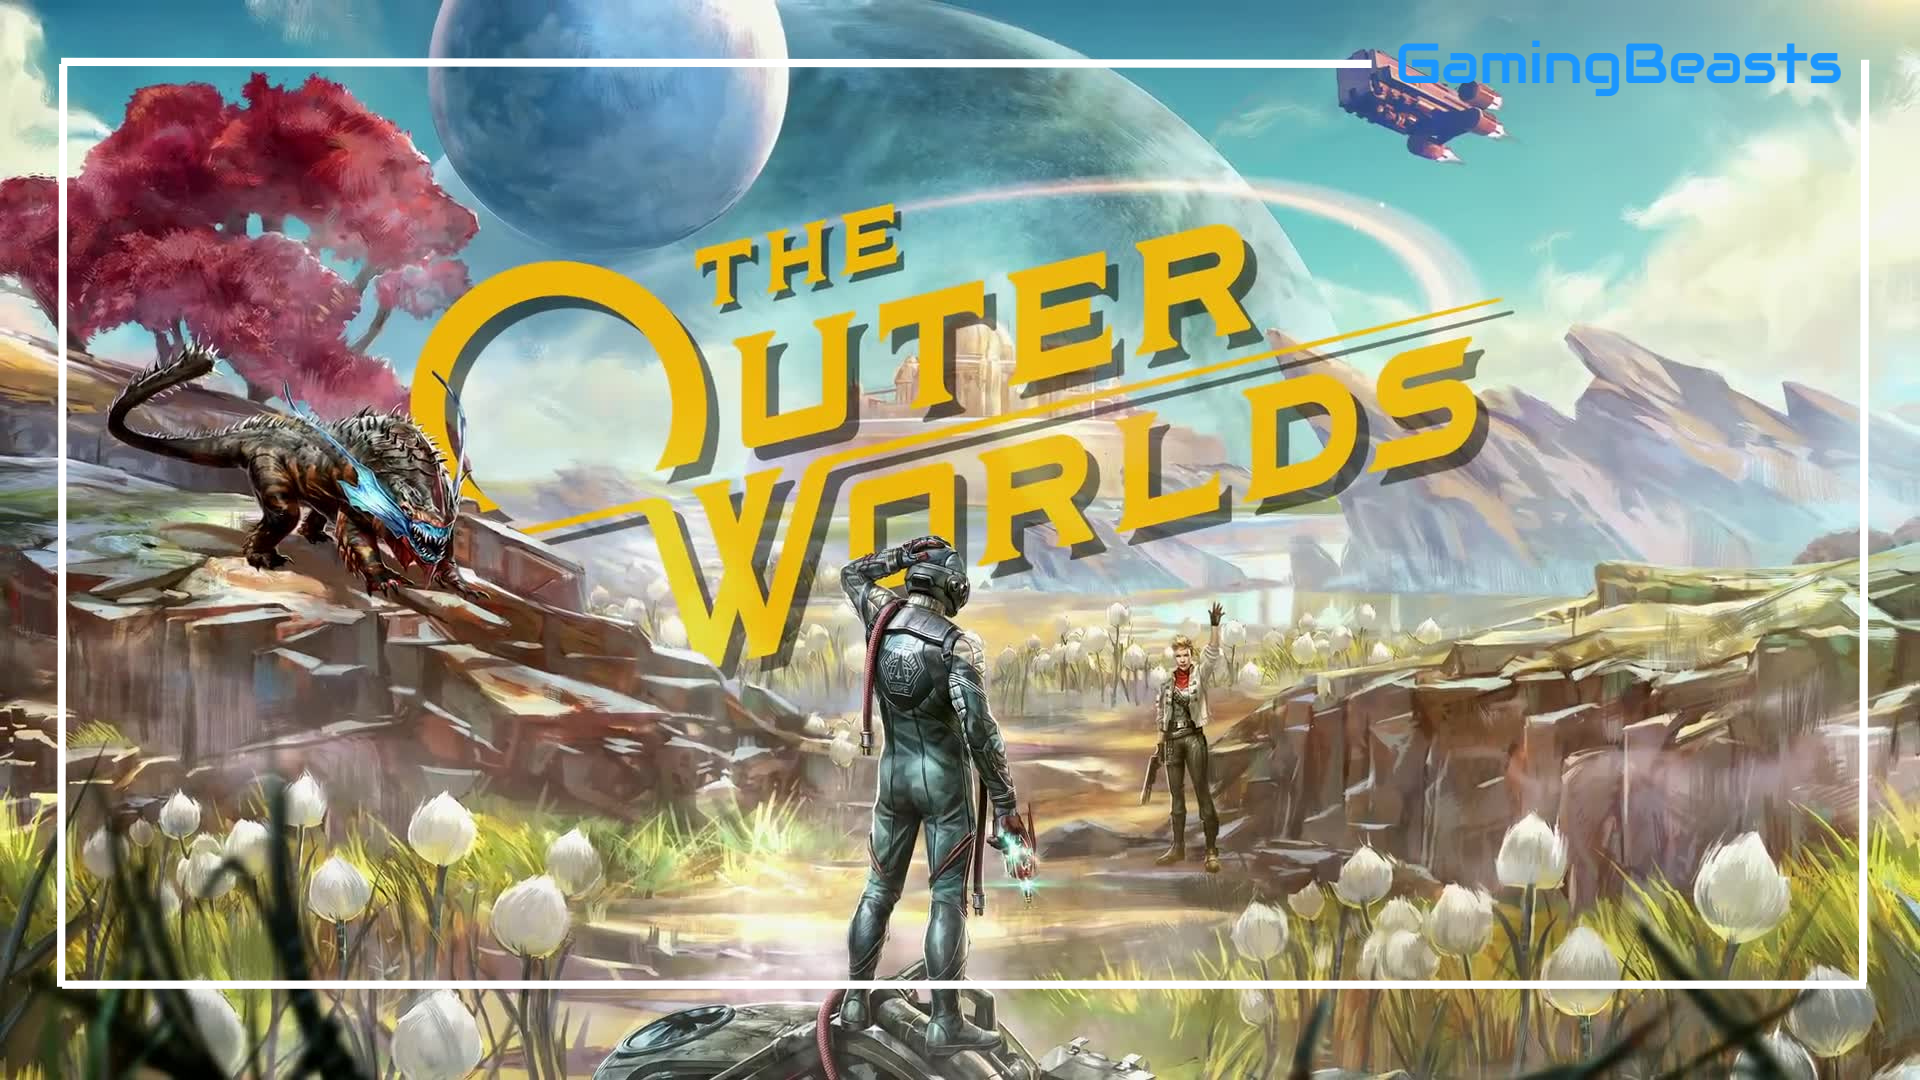 Requisitos mínimos e recomendados para jogar The Outer Worlds no PC